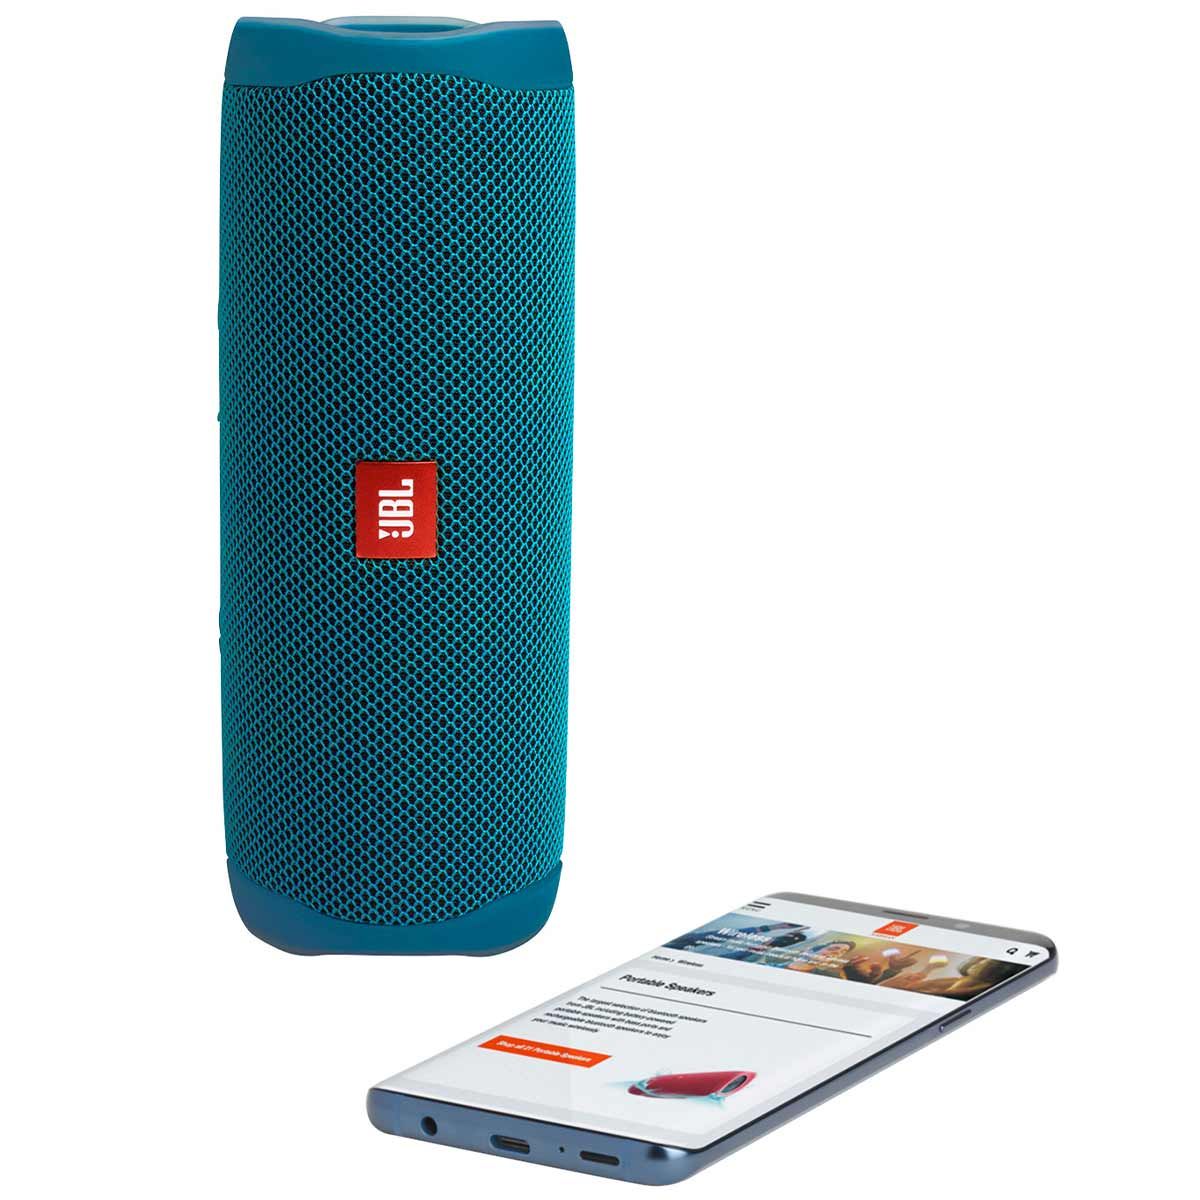 JBL Flip 5 Eco Edition Waterproof Bluetooth Speaker - Ocean Blue standing on end with phone